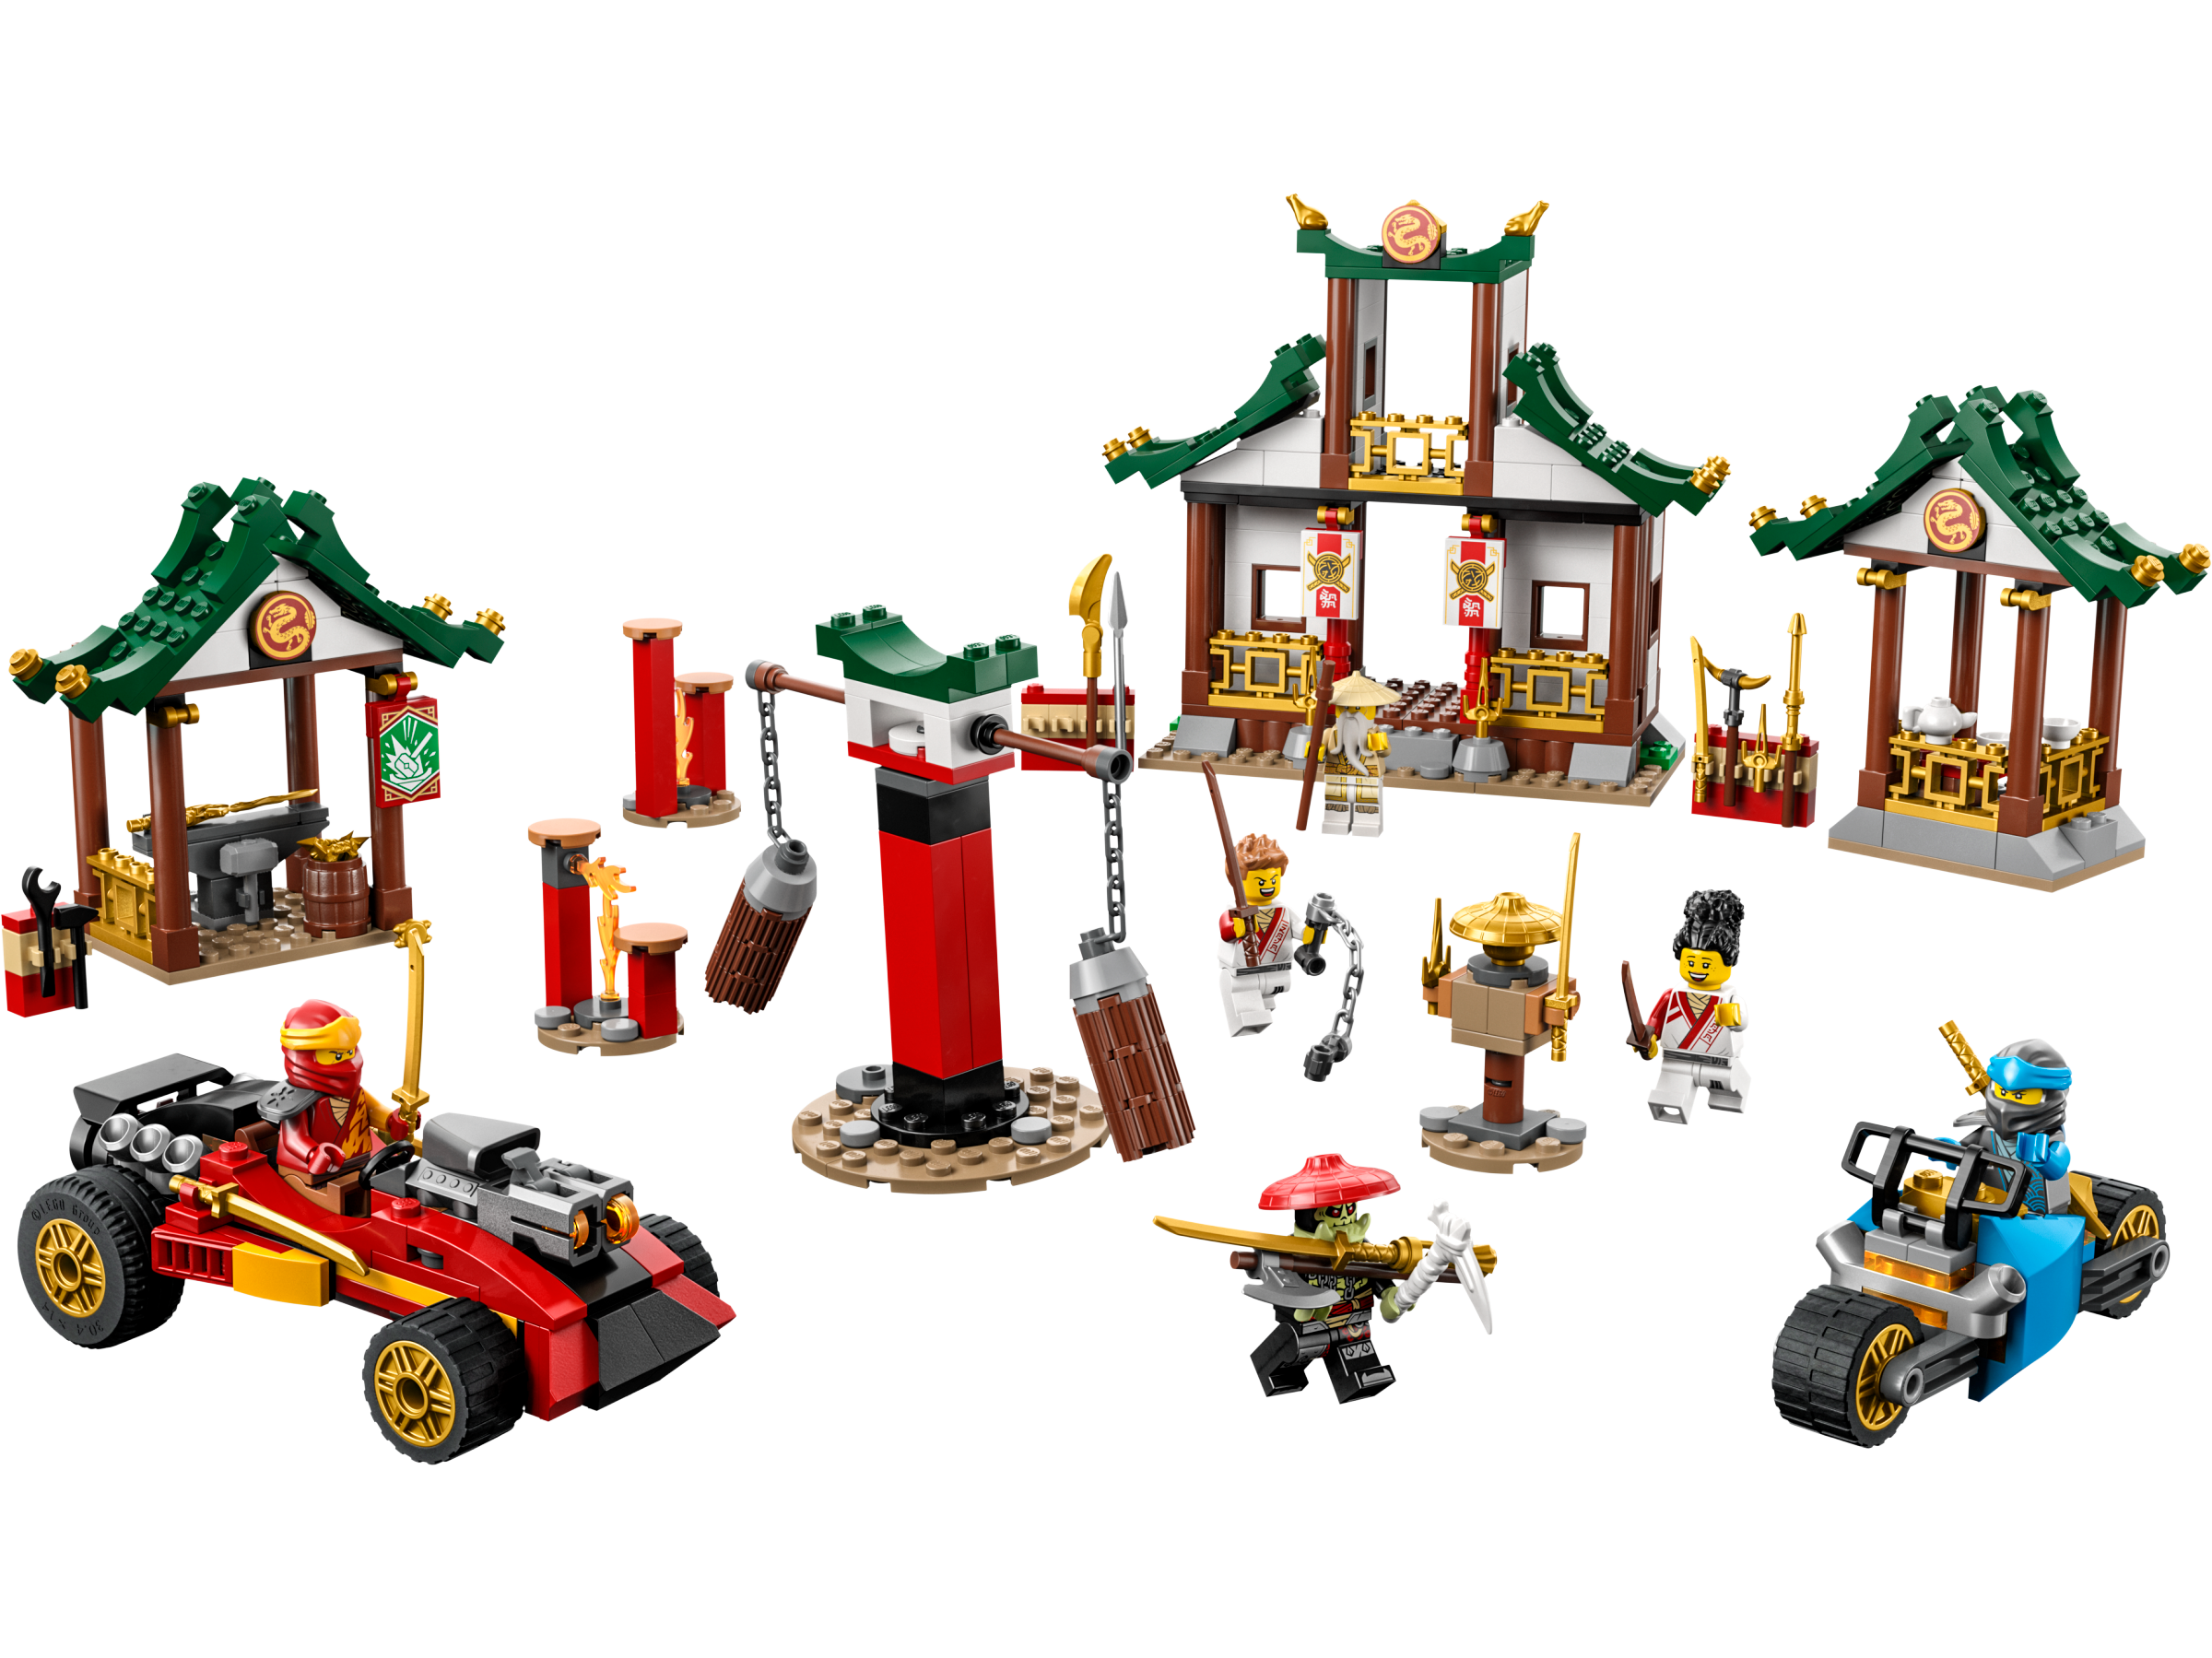 LEGO Ninjago - Caja Ninja de ladrillos creativos - 71787, Lego Ninjago